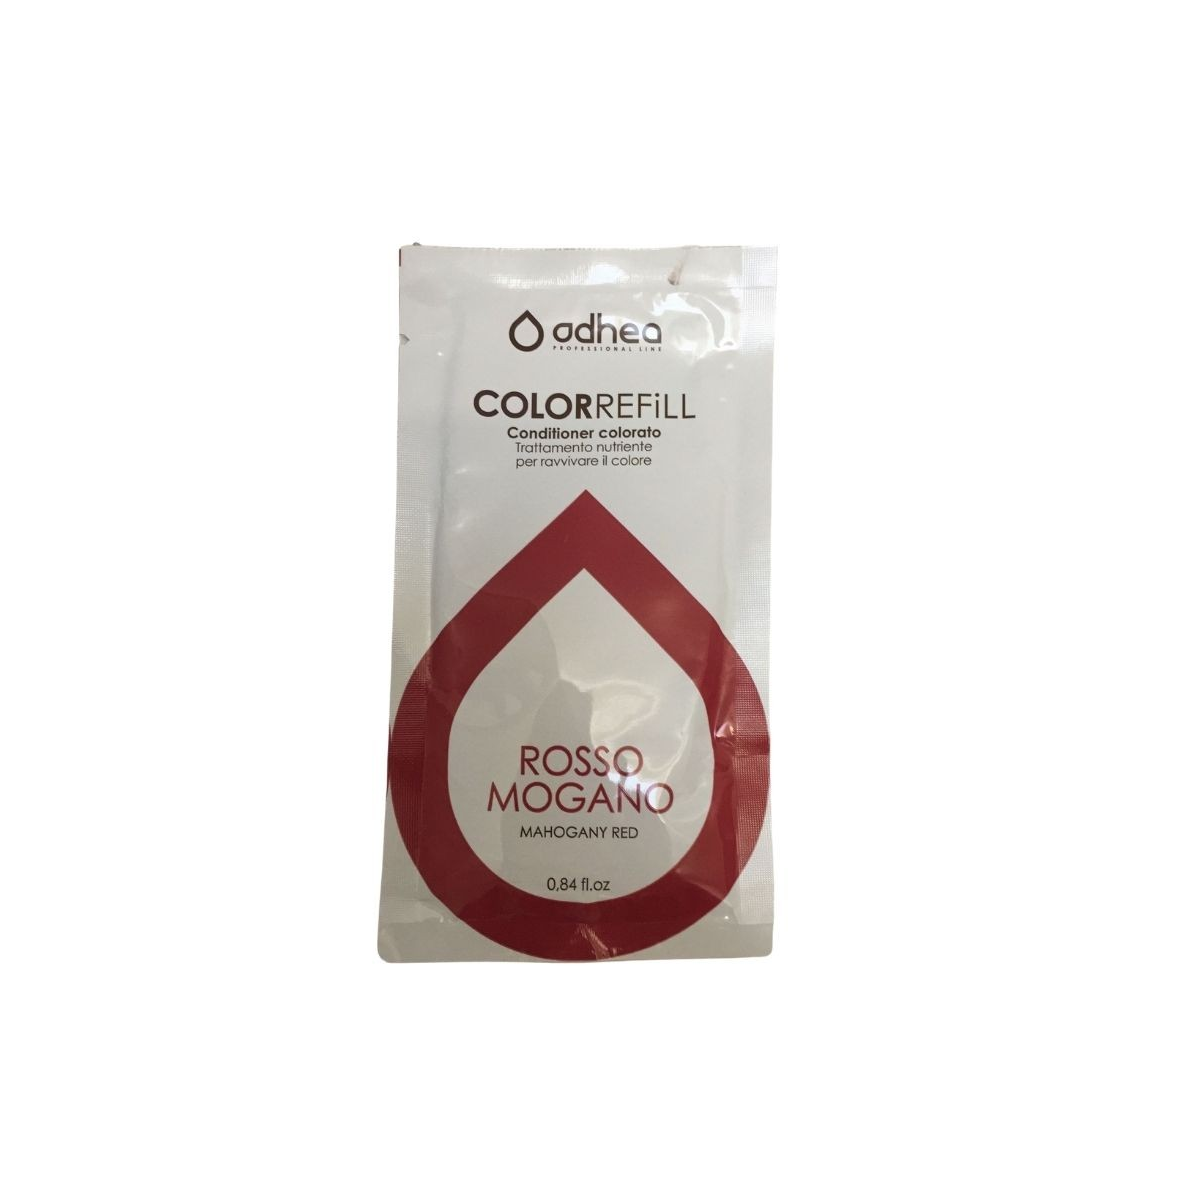 ODHEA - COLOR REFILL ROSSO MOGANO (25ml) Conditioner colorato